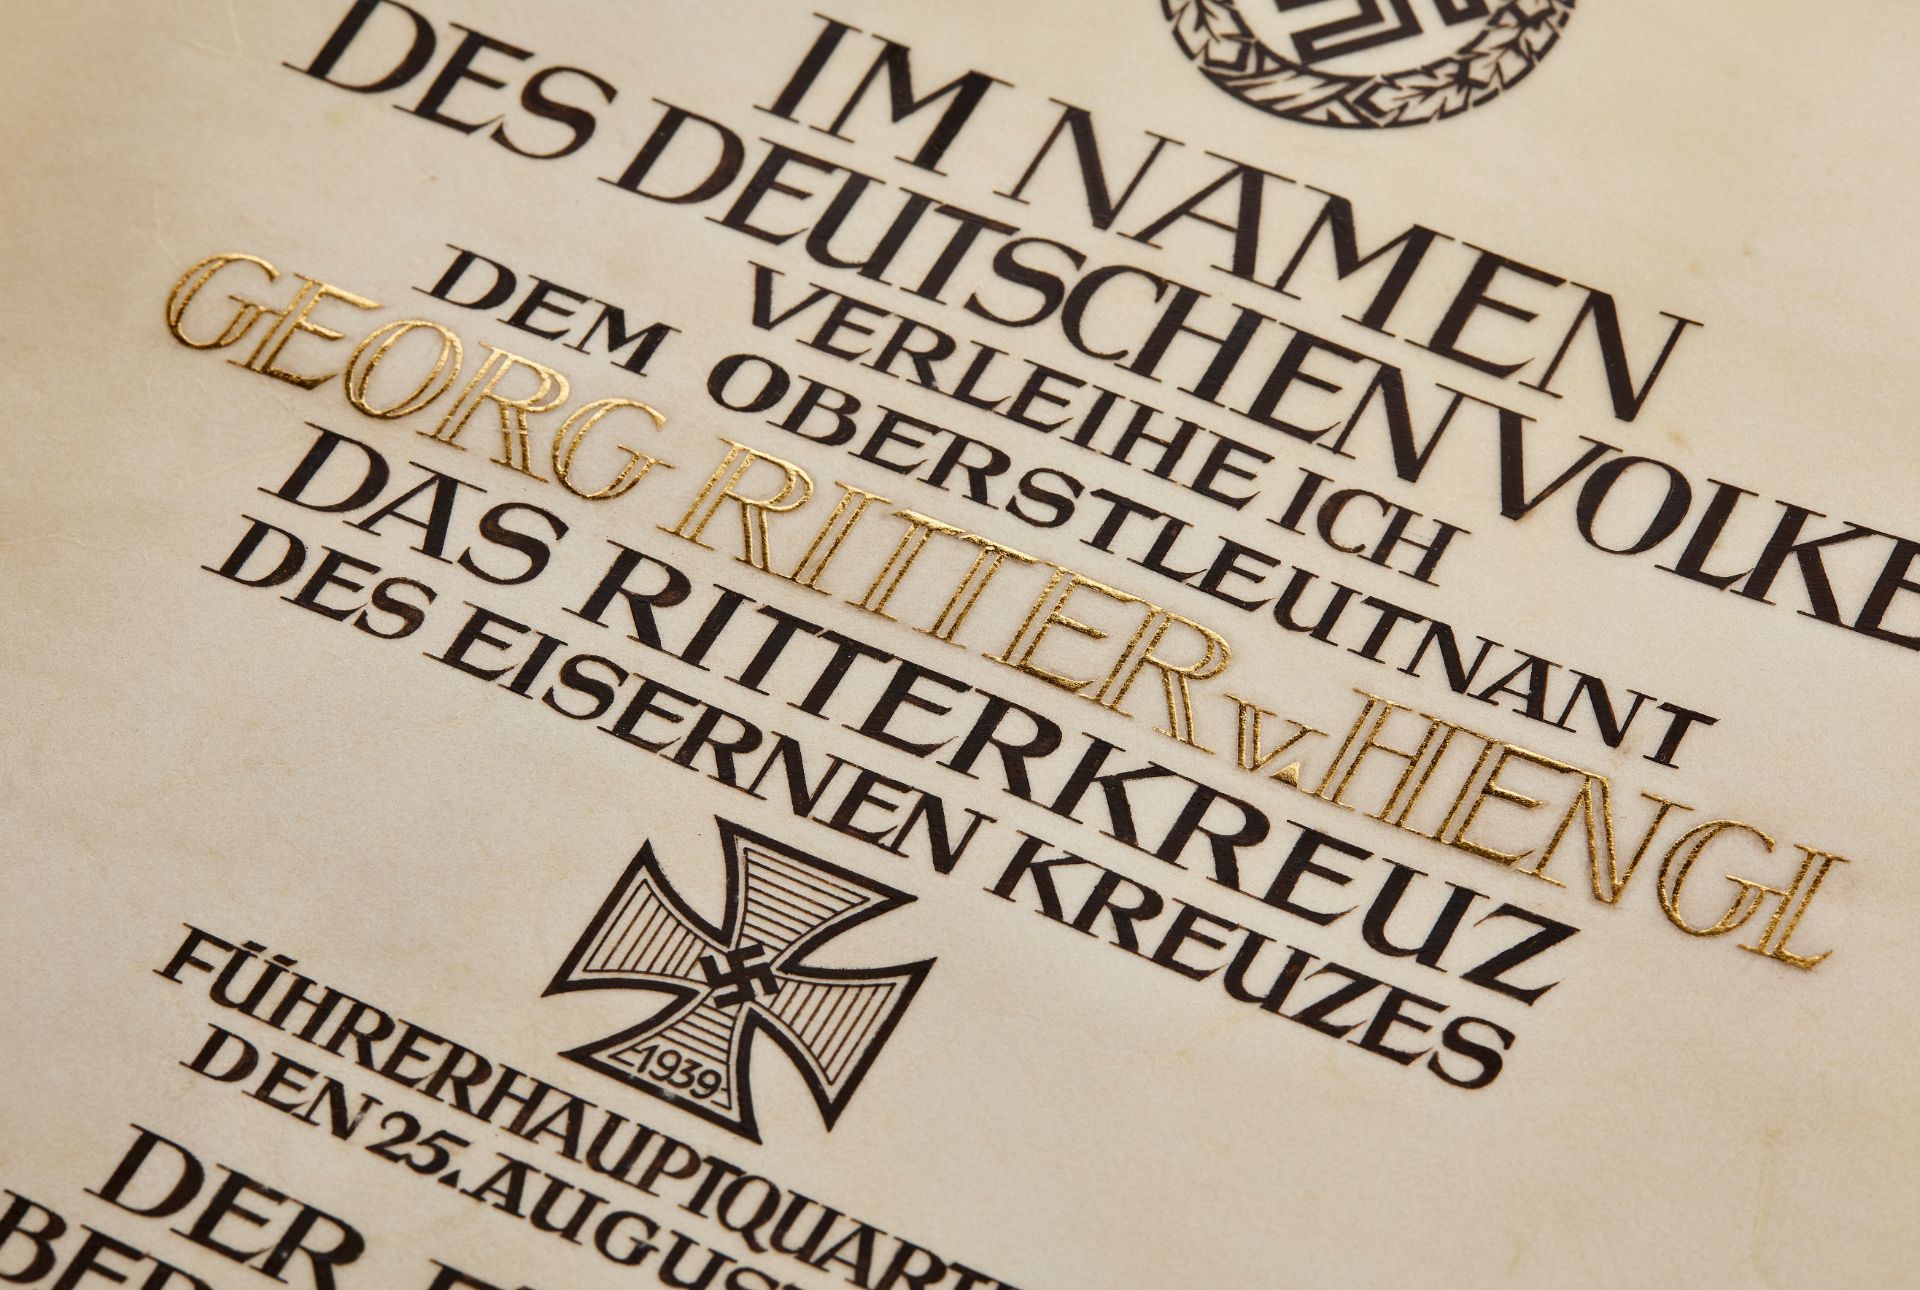 Große Verleihungsurkunde zum Ritterkreuz des Eisernen Kreuzes an Oberstleutnant Georg Ritter v....